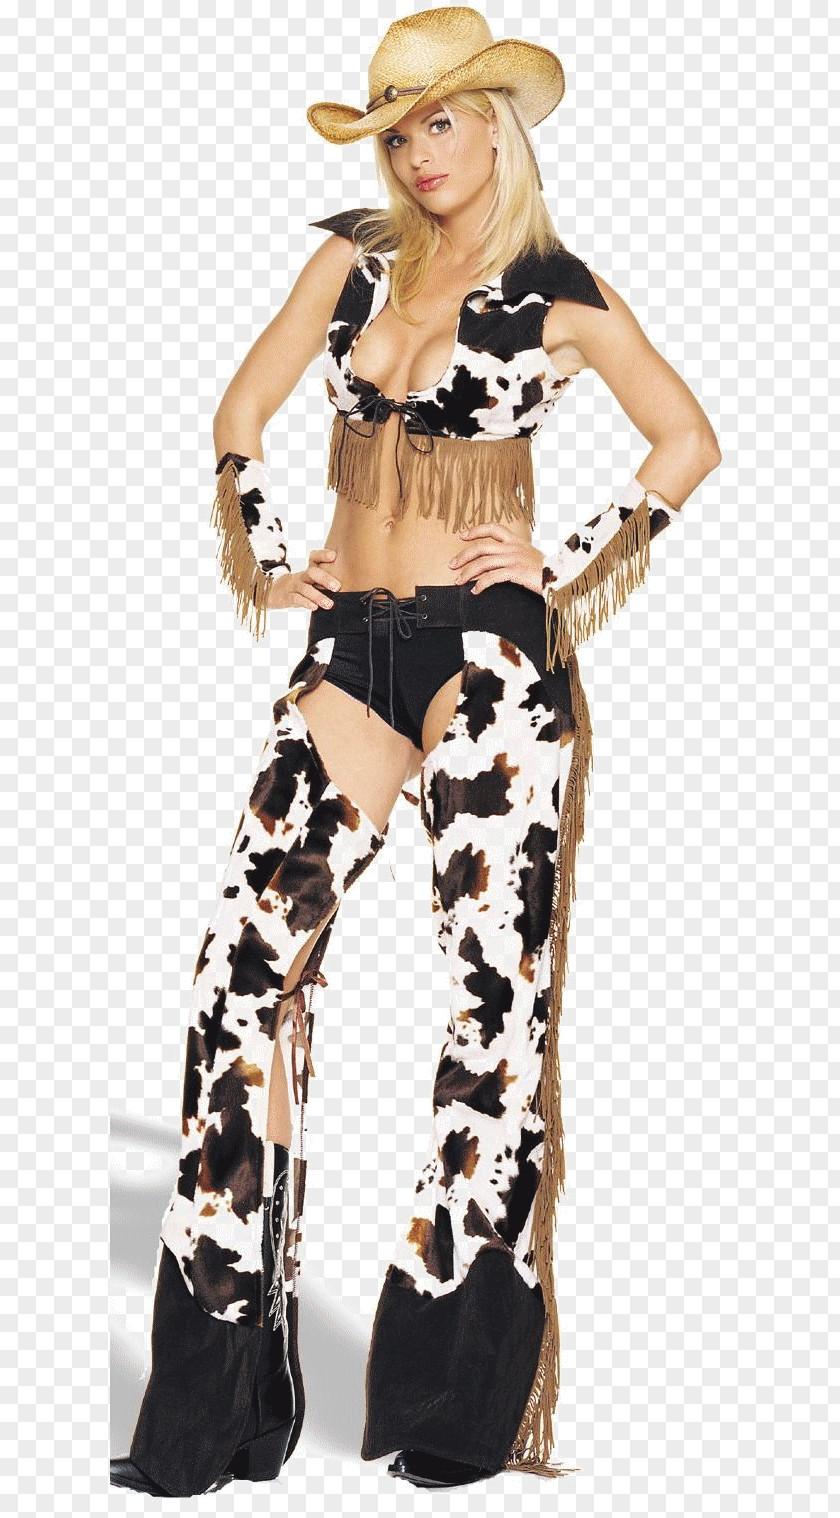 Genu Varum Cowboy Woman On Top Costume Female PNG